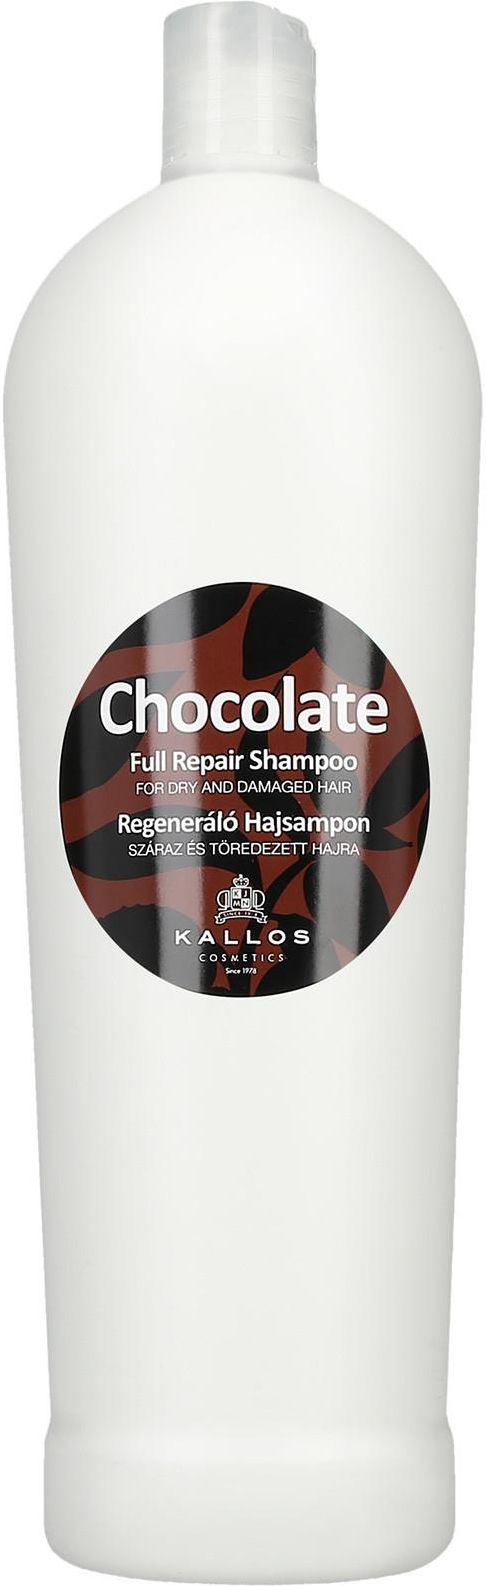 kallos chocolate szampon do włosów suchych i zniszczonych opiniw